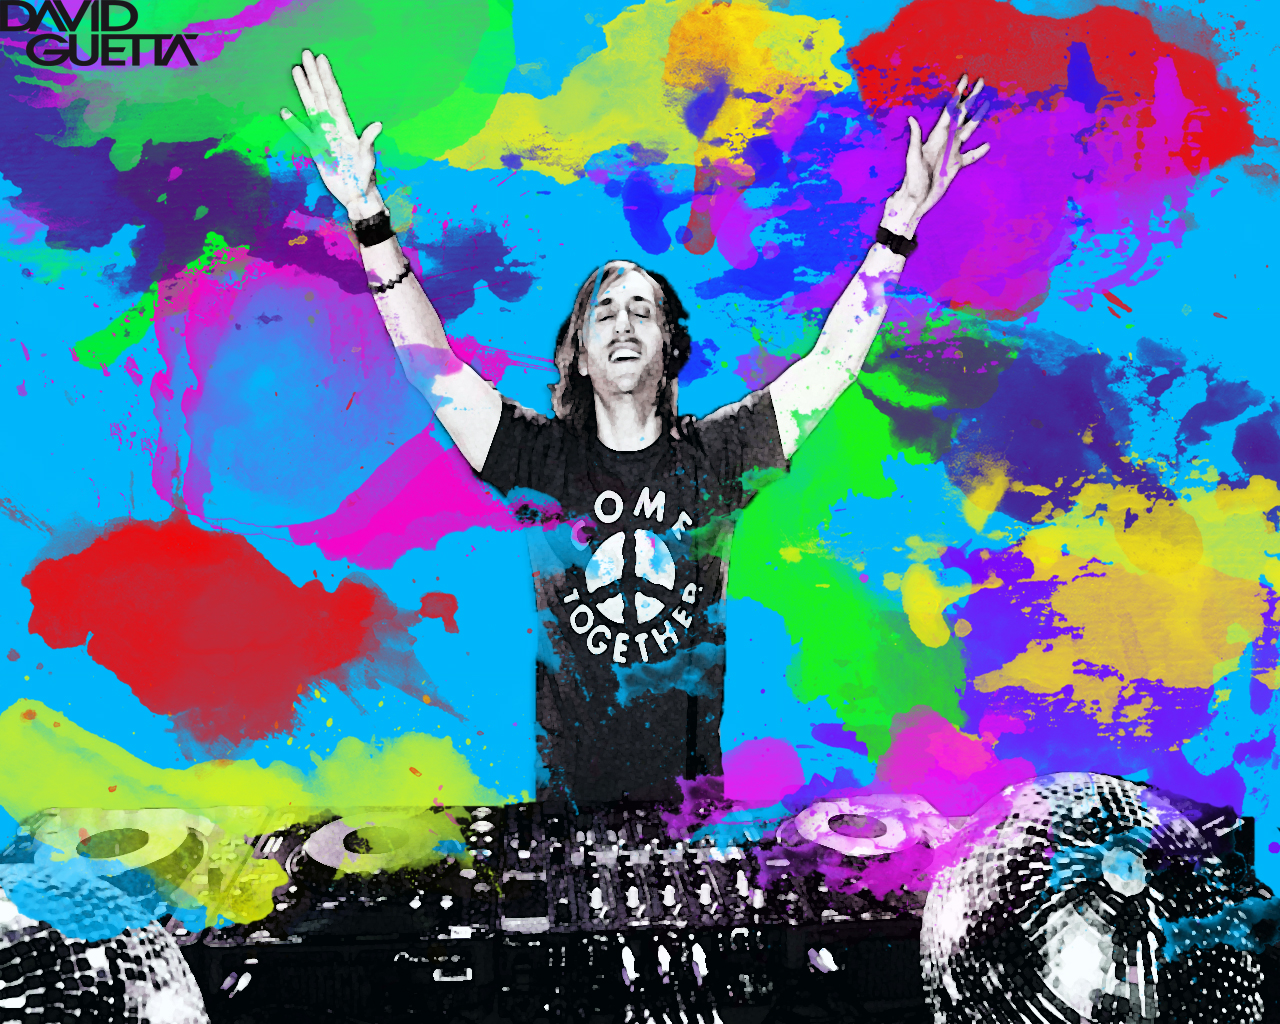 David Guetta Wallpaper by WebDesign23 on DeviantArt